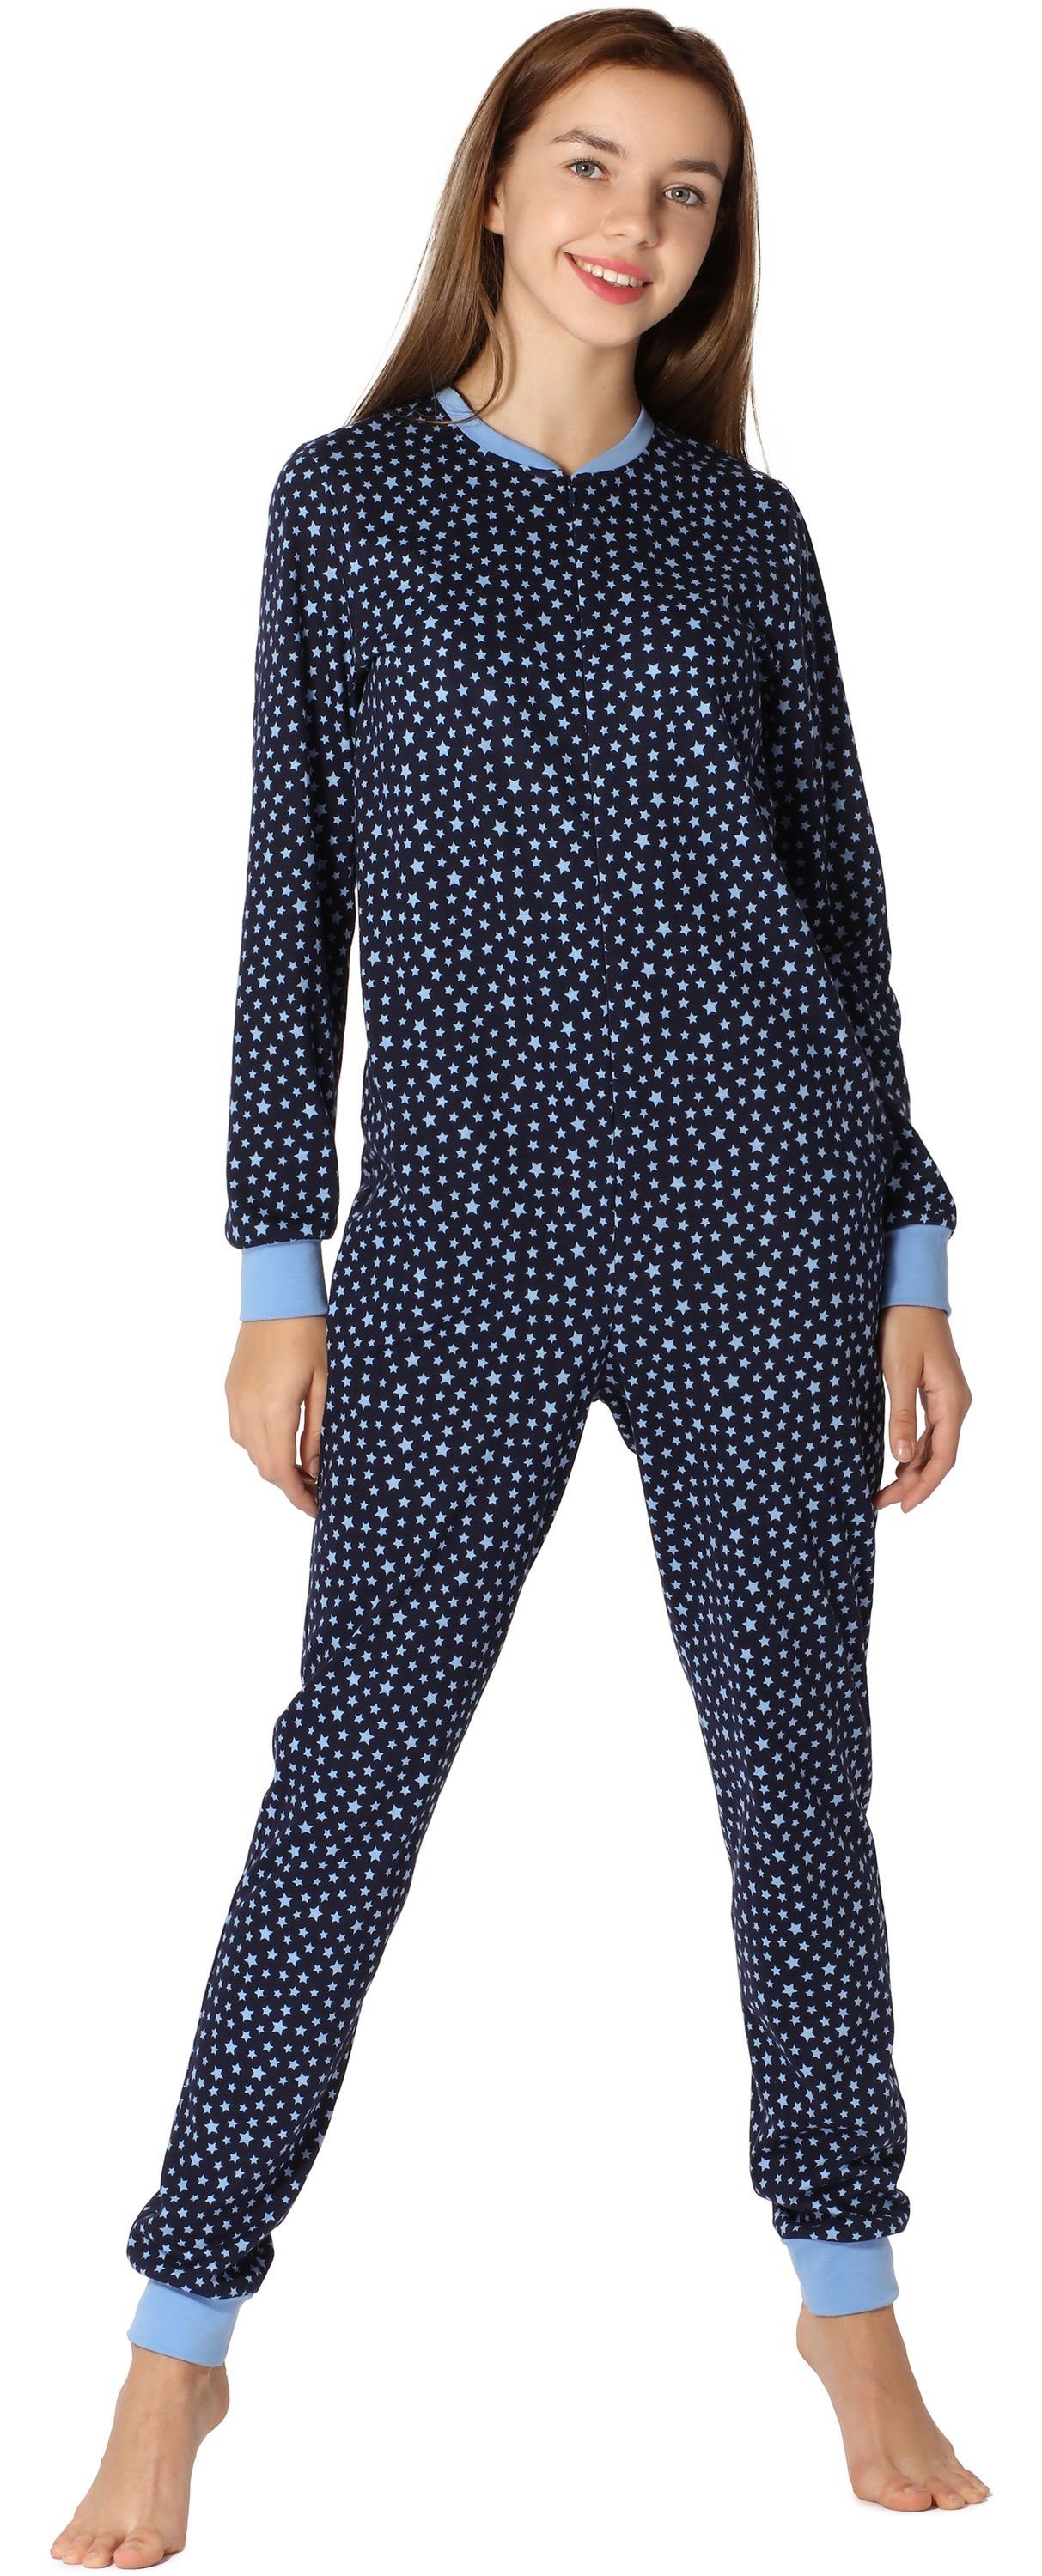 Jugend Blau/Sterne Schlafanzug Mädchen MS10-235 Merry Schlafanzug Schlafoverall Style